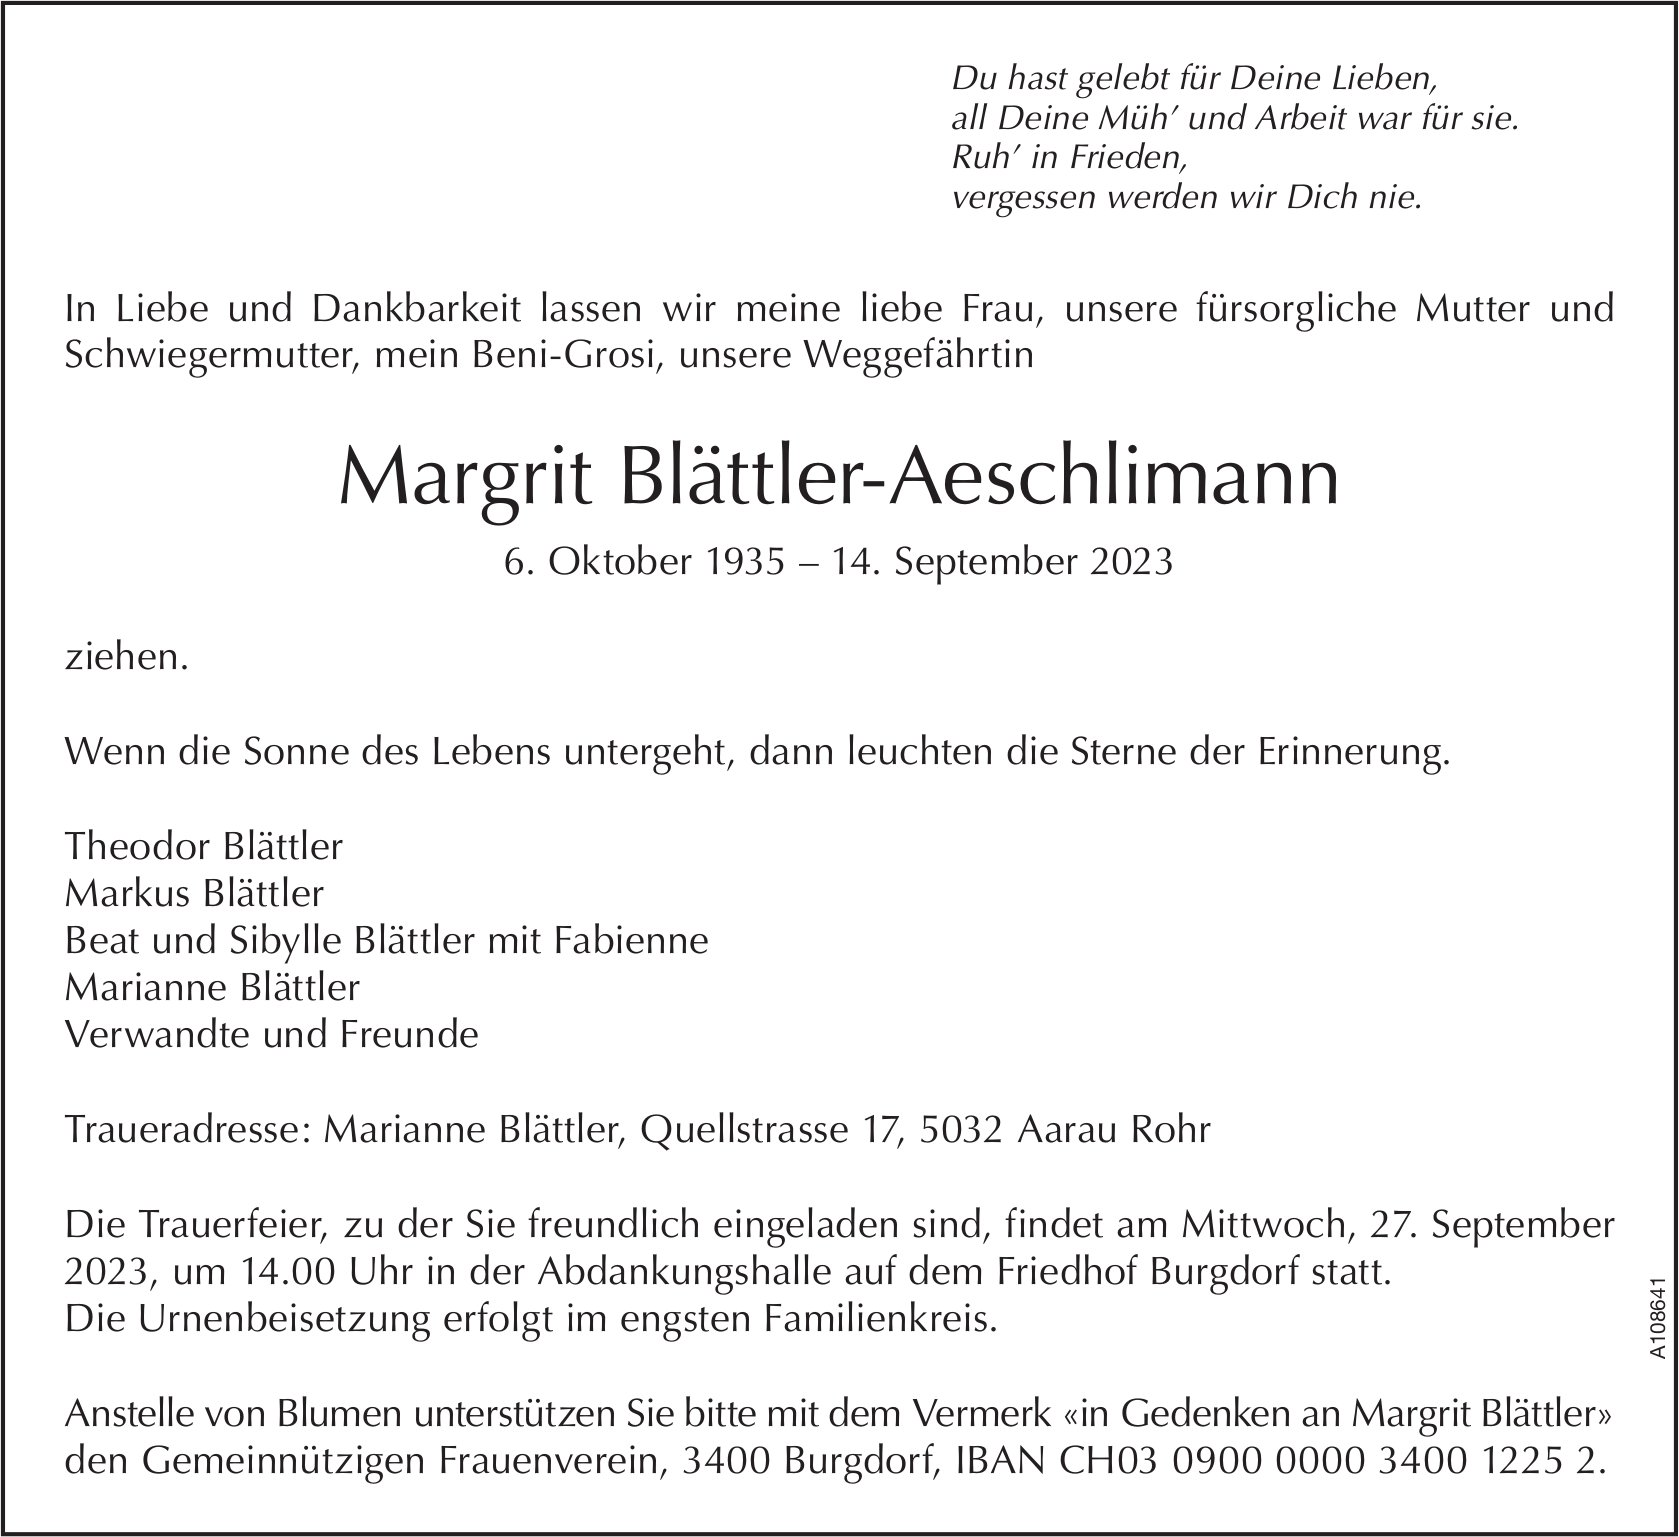 Margrit Blättler-Aeschlimann, September 2023 / TA